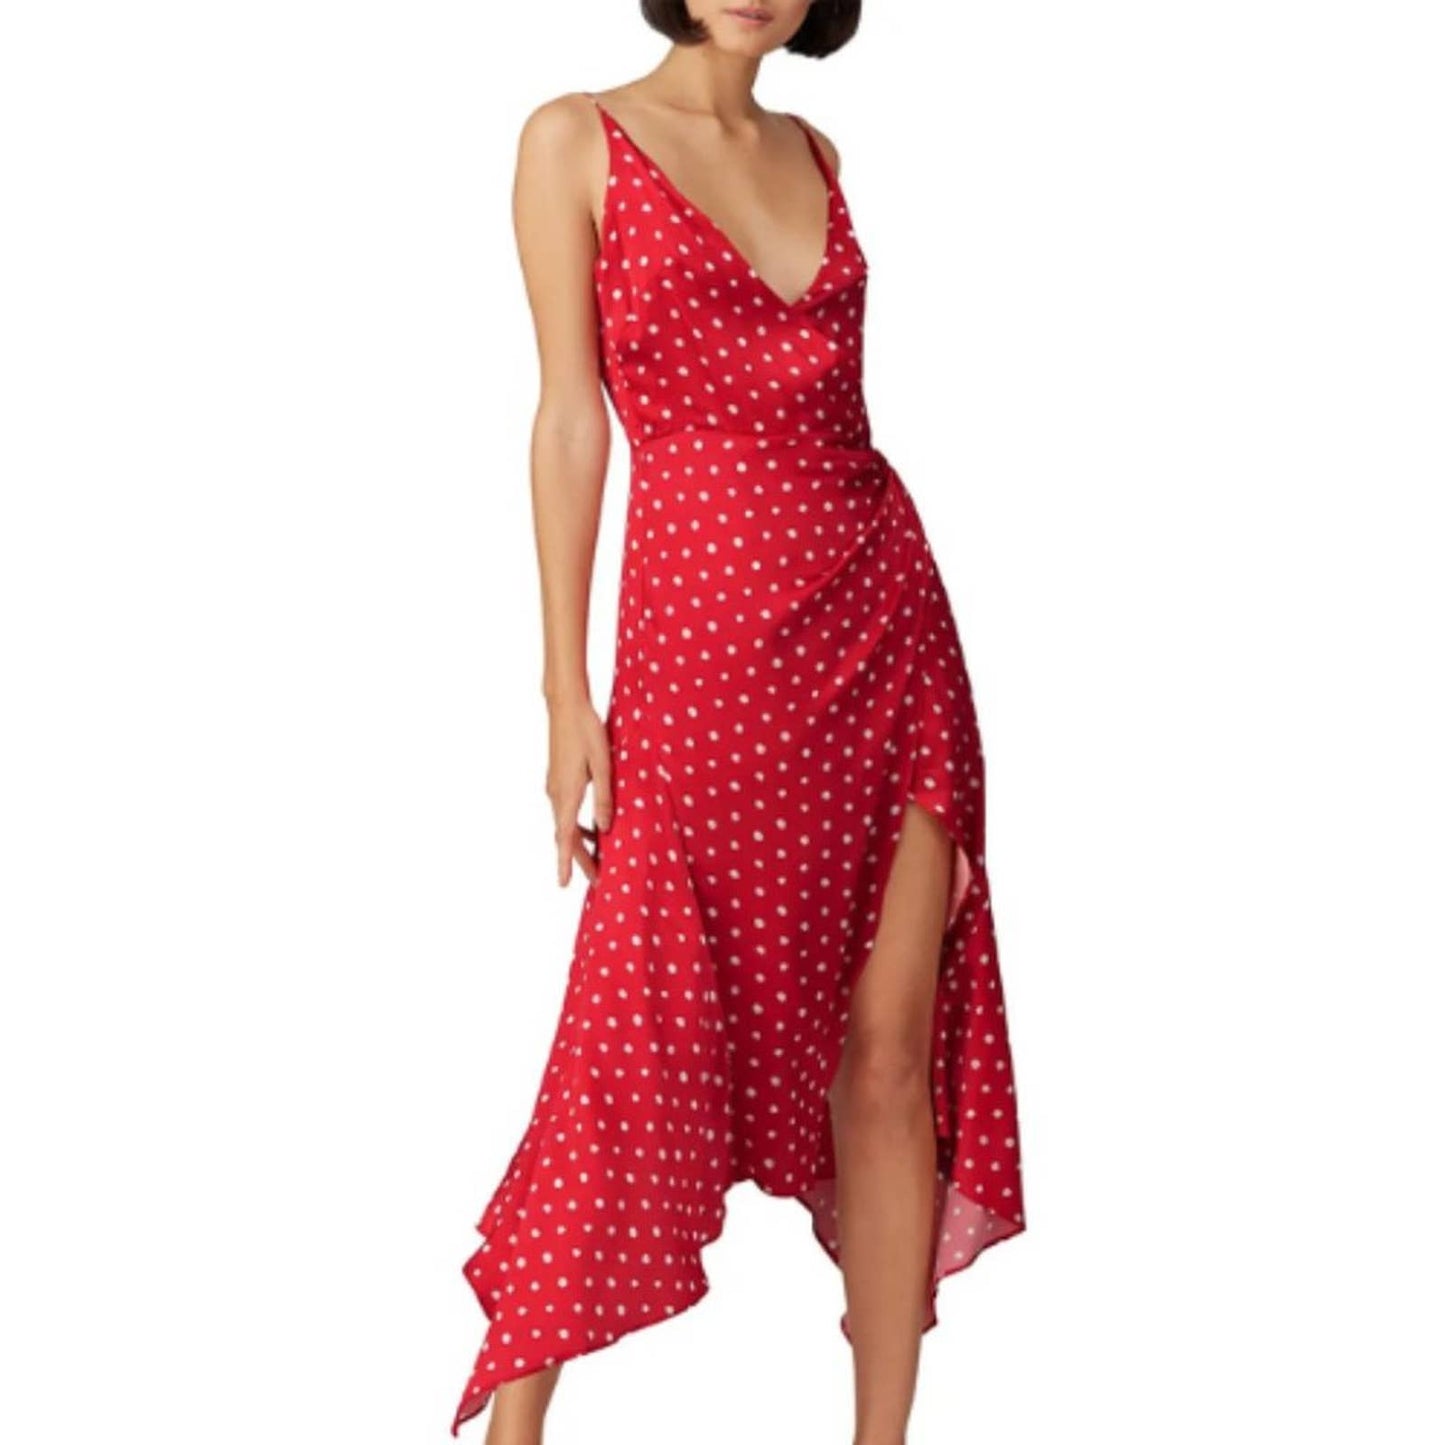 Haney Olivia Dress Red & White Polka Dot in Size 10